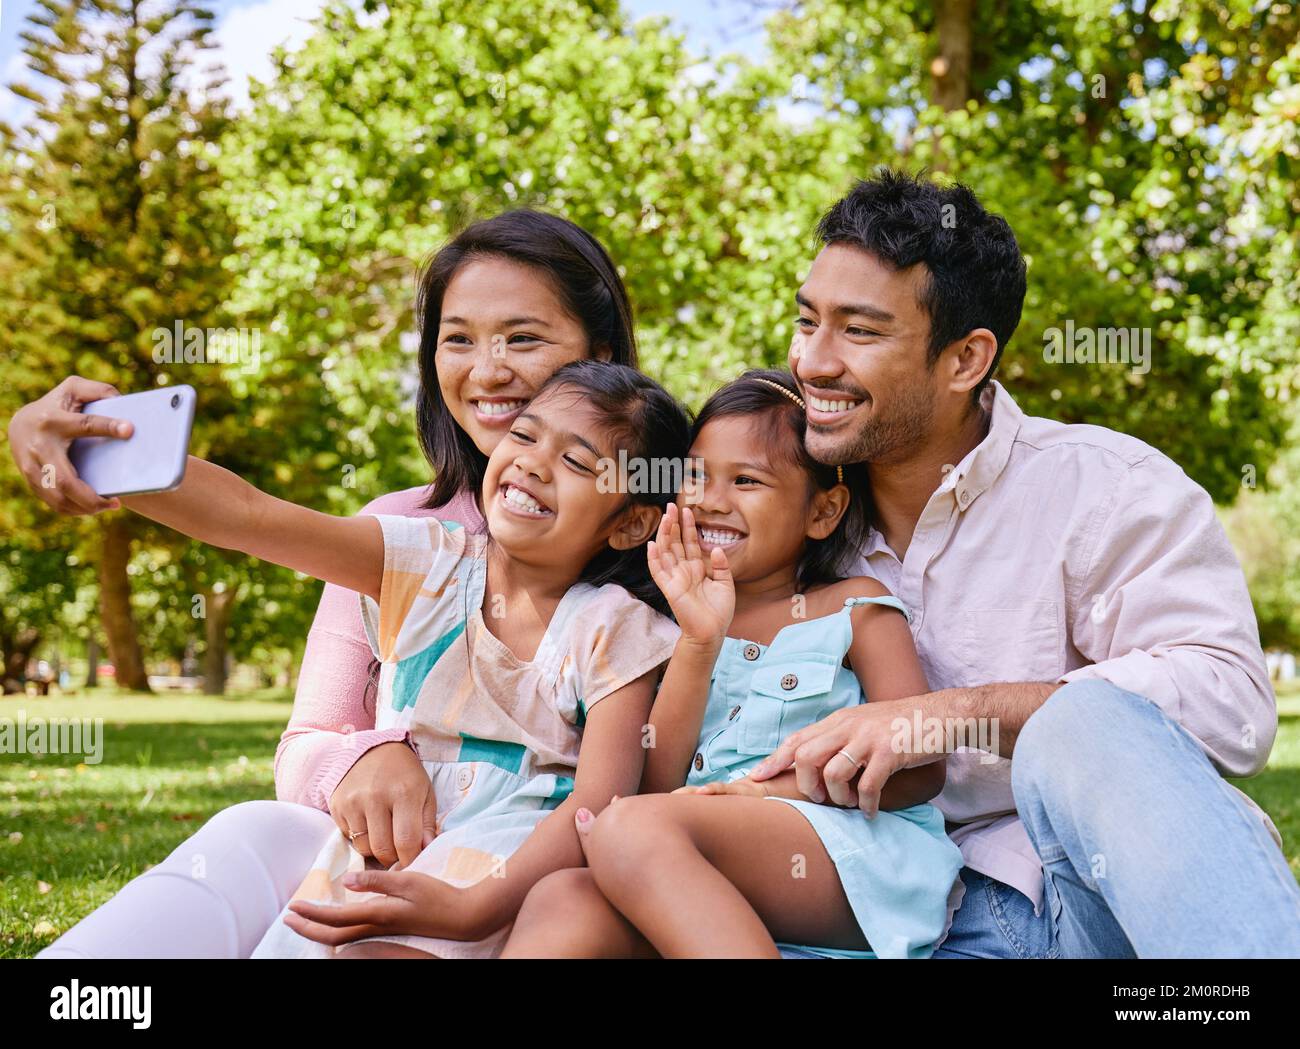 Glückliche asiatische Familie, die Selfies macht und Videogespräche führt, während sie sich im Park entspannen. Liebende Eltern, die Fotos und Bilder für eine besondere Kindheit aufnehmen Stockfoto